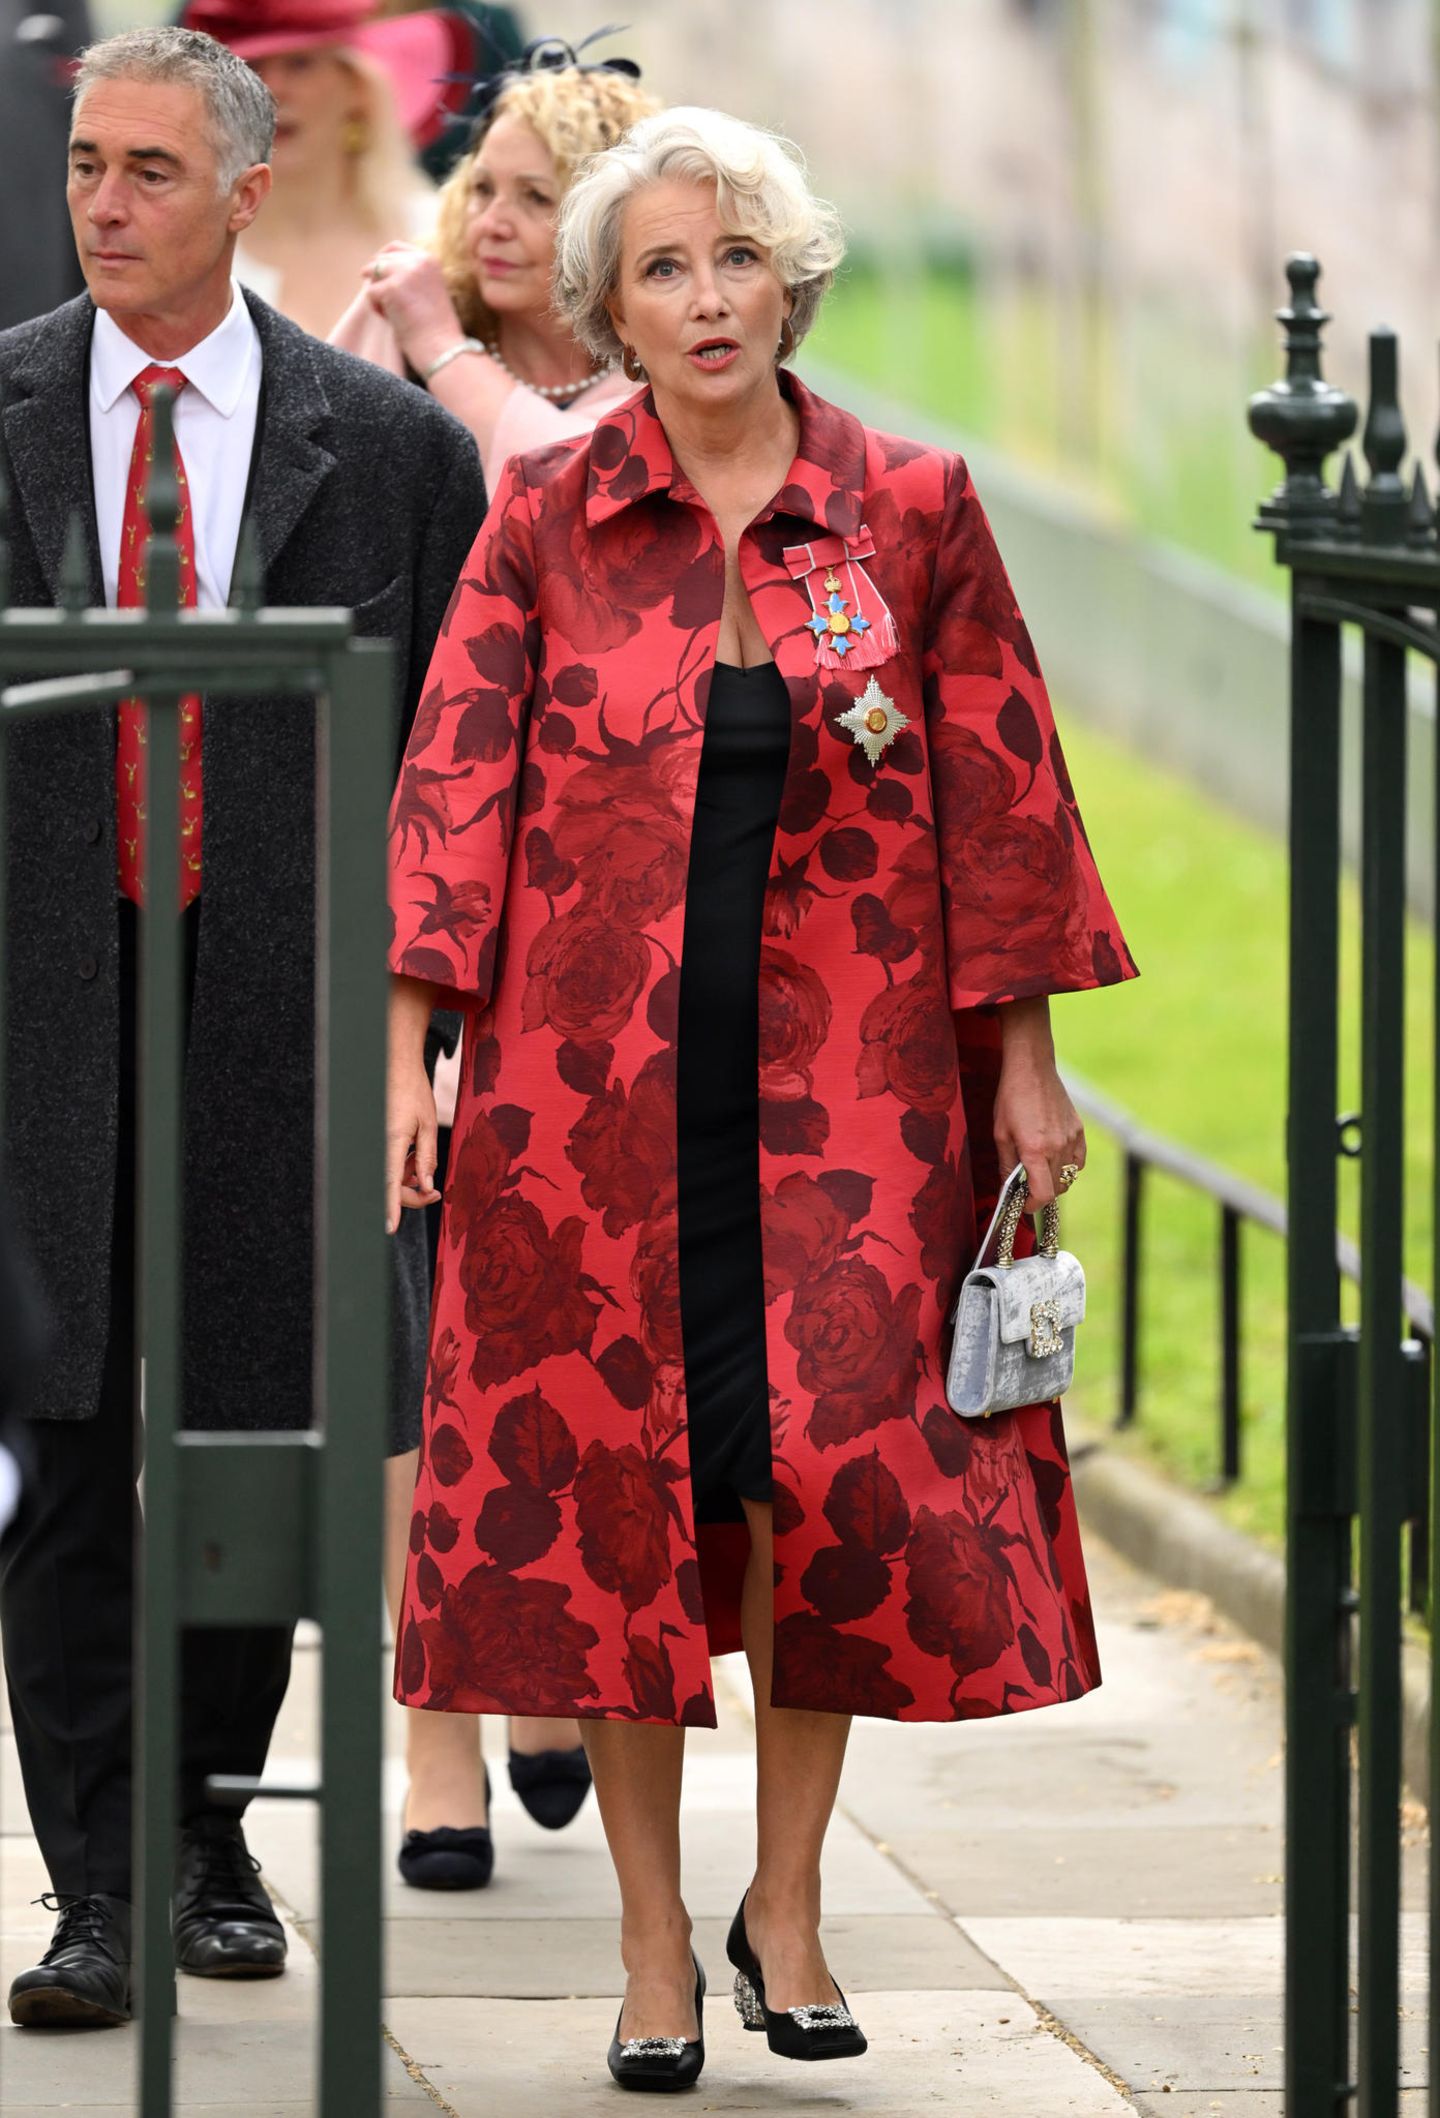 Auch die prominenten Gäste haben sich für die Krönung herausgeputzt. Emma Thomspon, die 2018 von Prinz William zur Dame geschlagen wurde, präsentiert für den besonderen Anlass einen roten Blumenmantel von Emilia Wickstead, die auch zu den Lieblingsdesignerinnen von Catherine, Princess of Wales, gehört. 